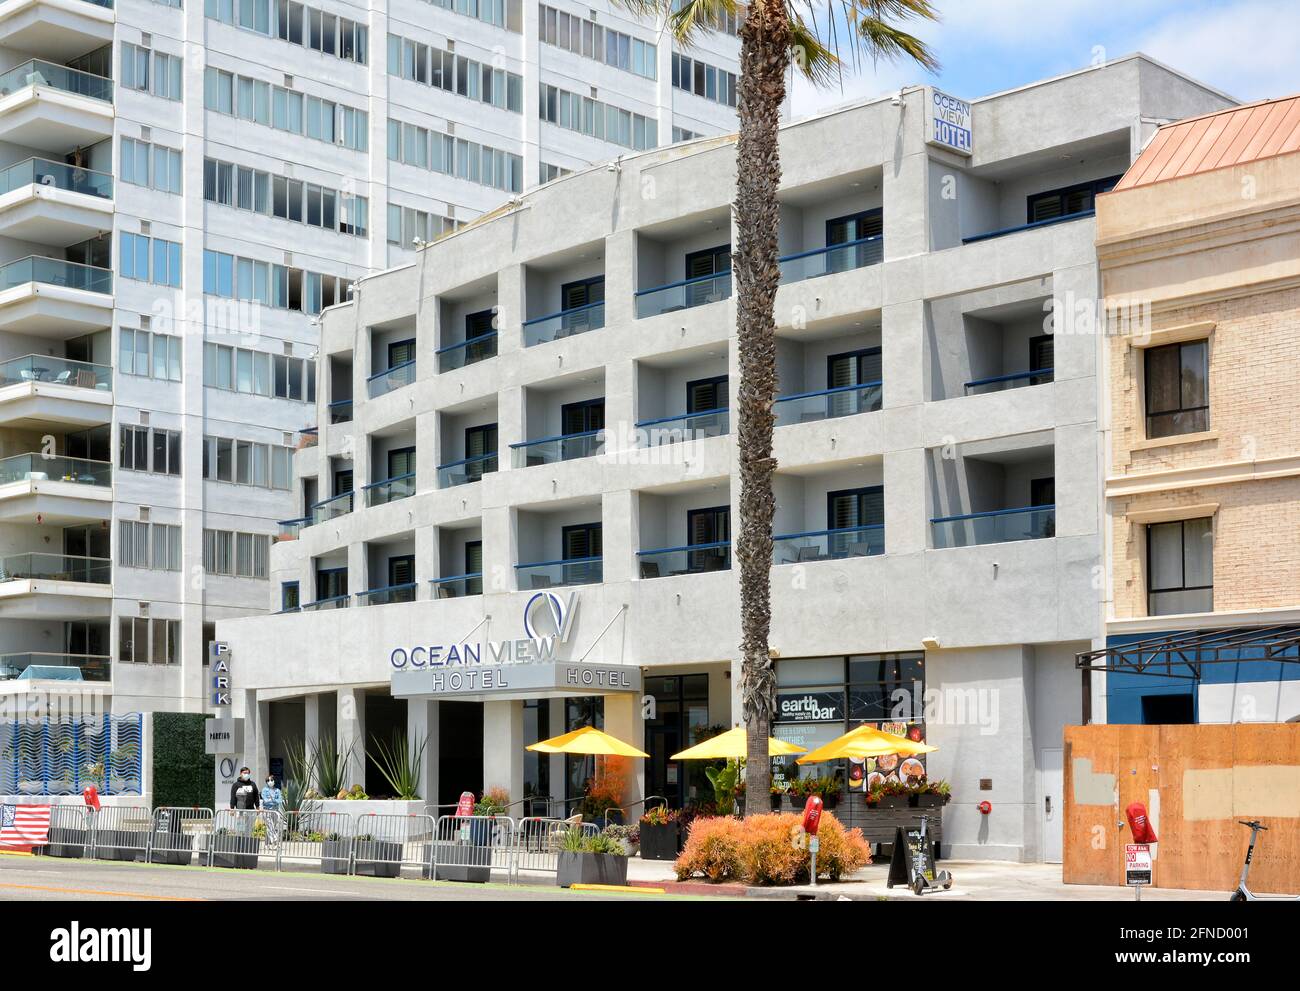 SANTA MONICA, CALIFORNIA - 15 MAGGIO 2021: L'Ocean View Hotel è un hotel boutique sulla spiaggia a pochi passi dal molo di Santa Monica. Foto Stock